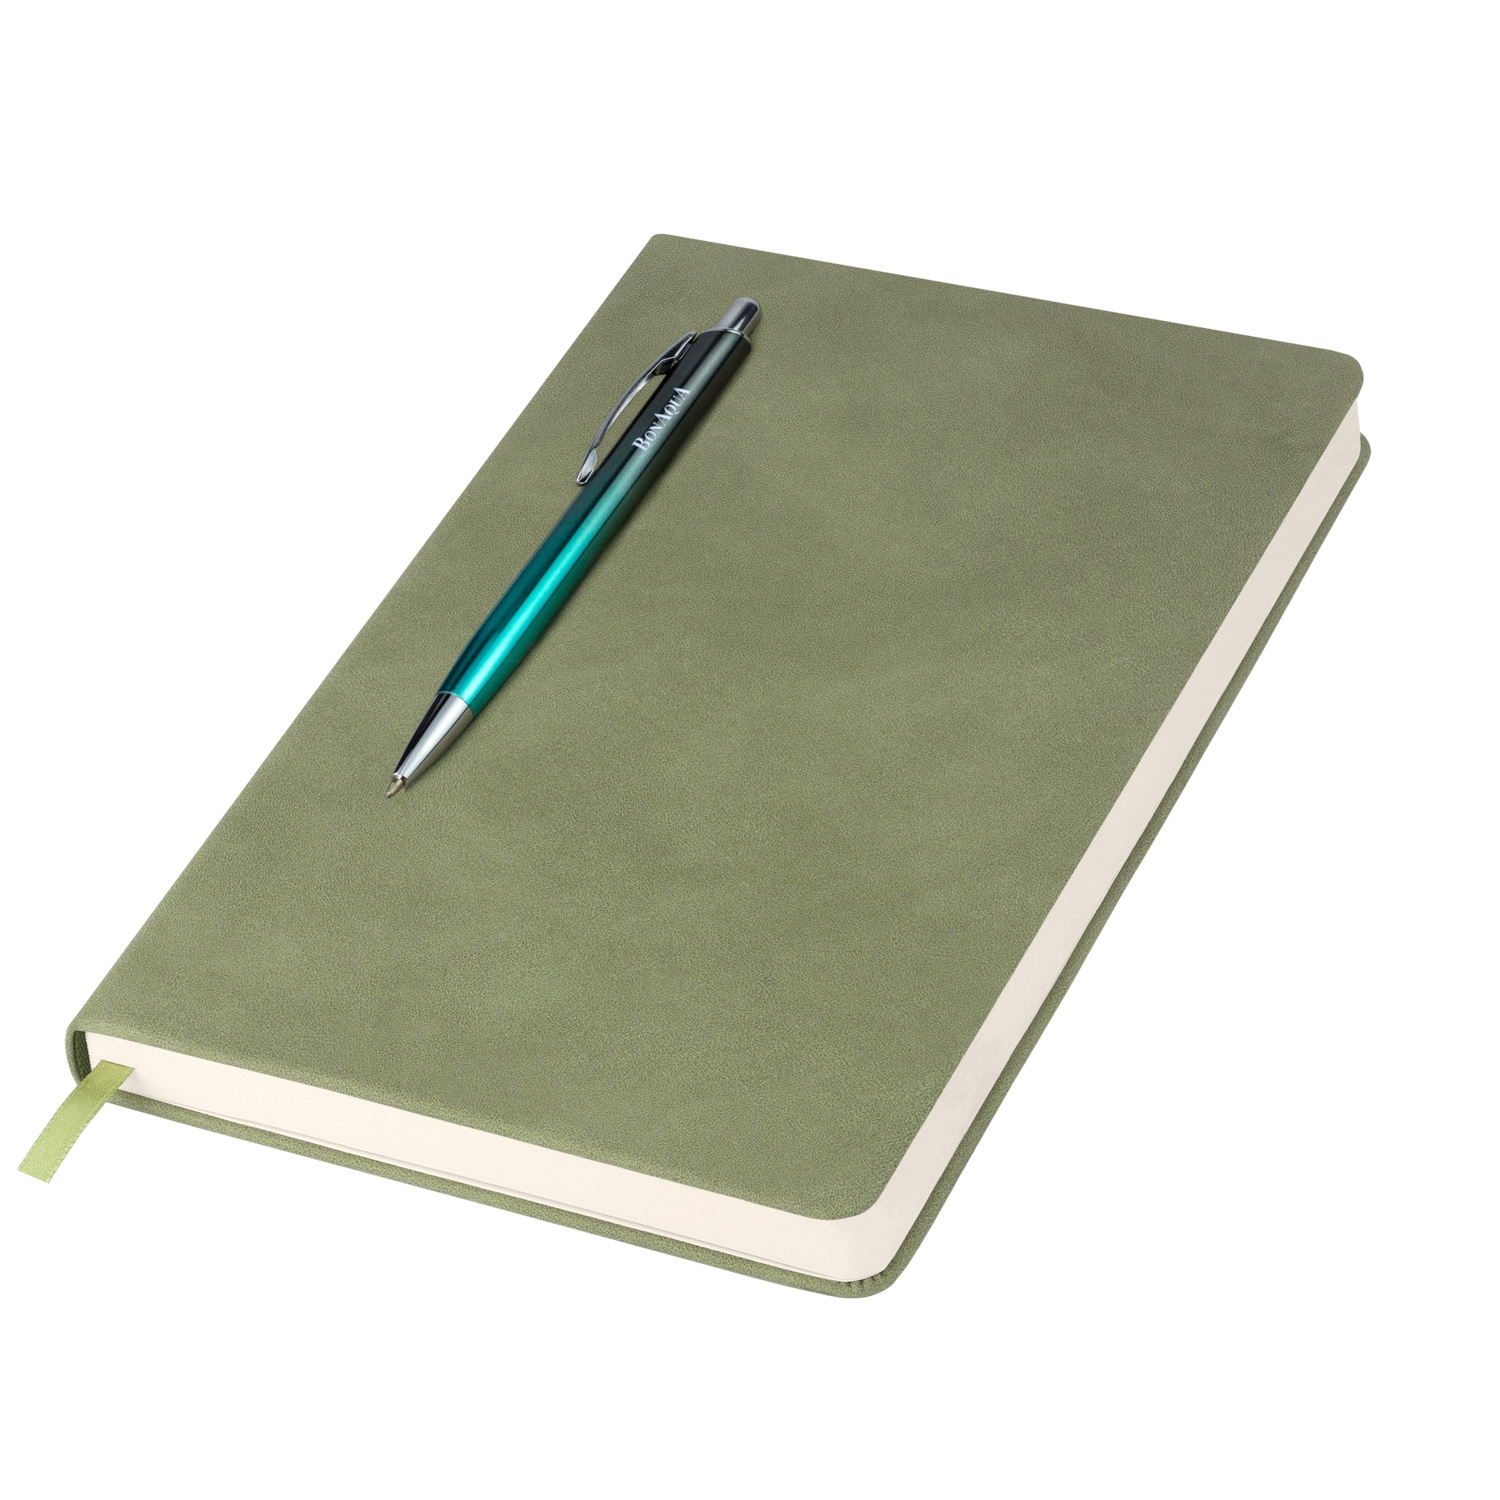 Ежедневник Stella недатированный с магнитом на обложке, светло-зеленый, зеленый